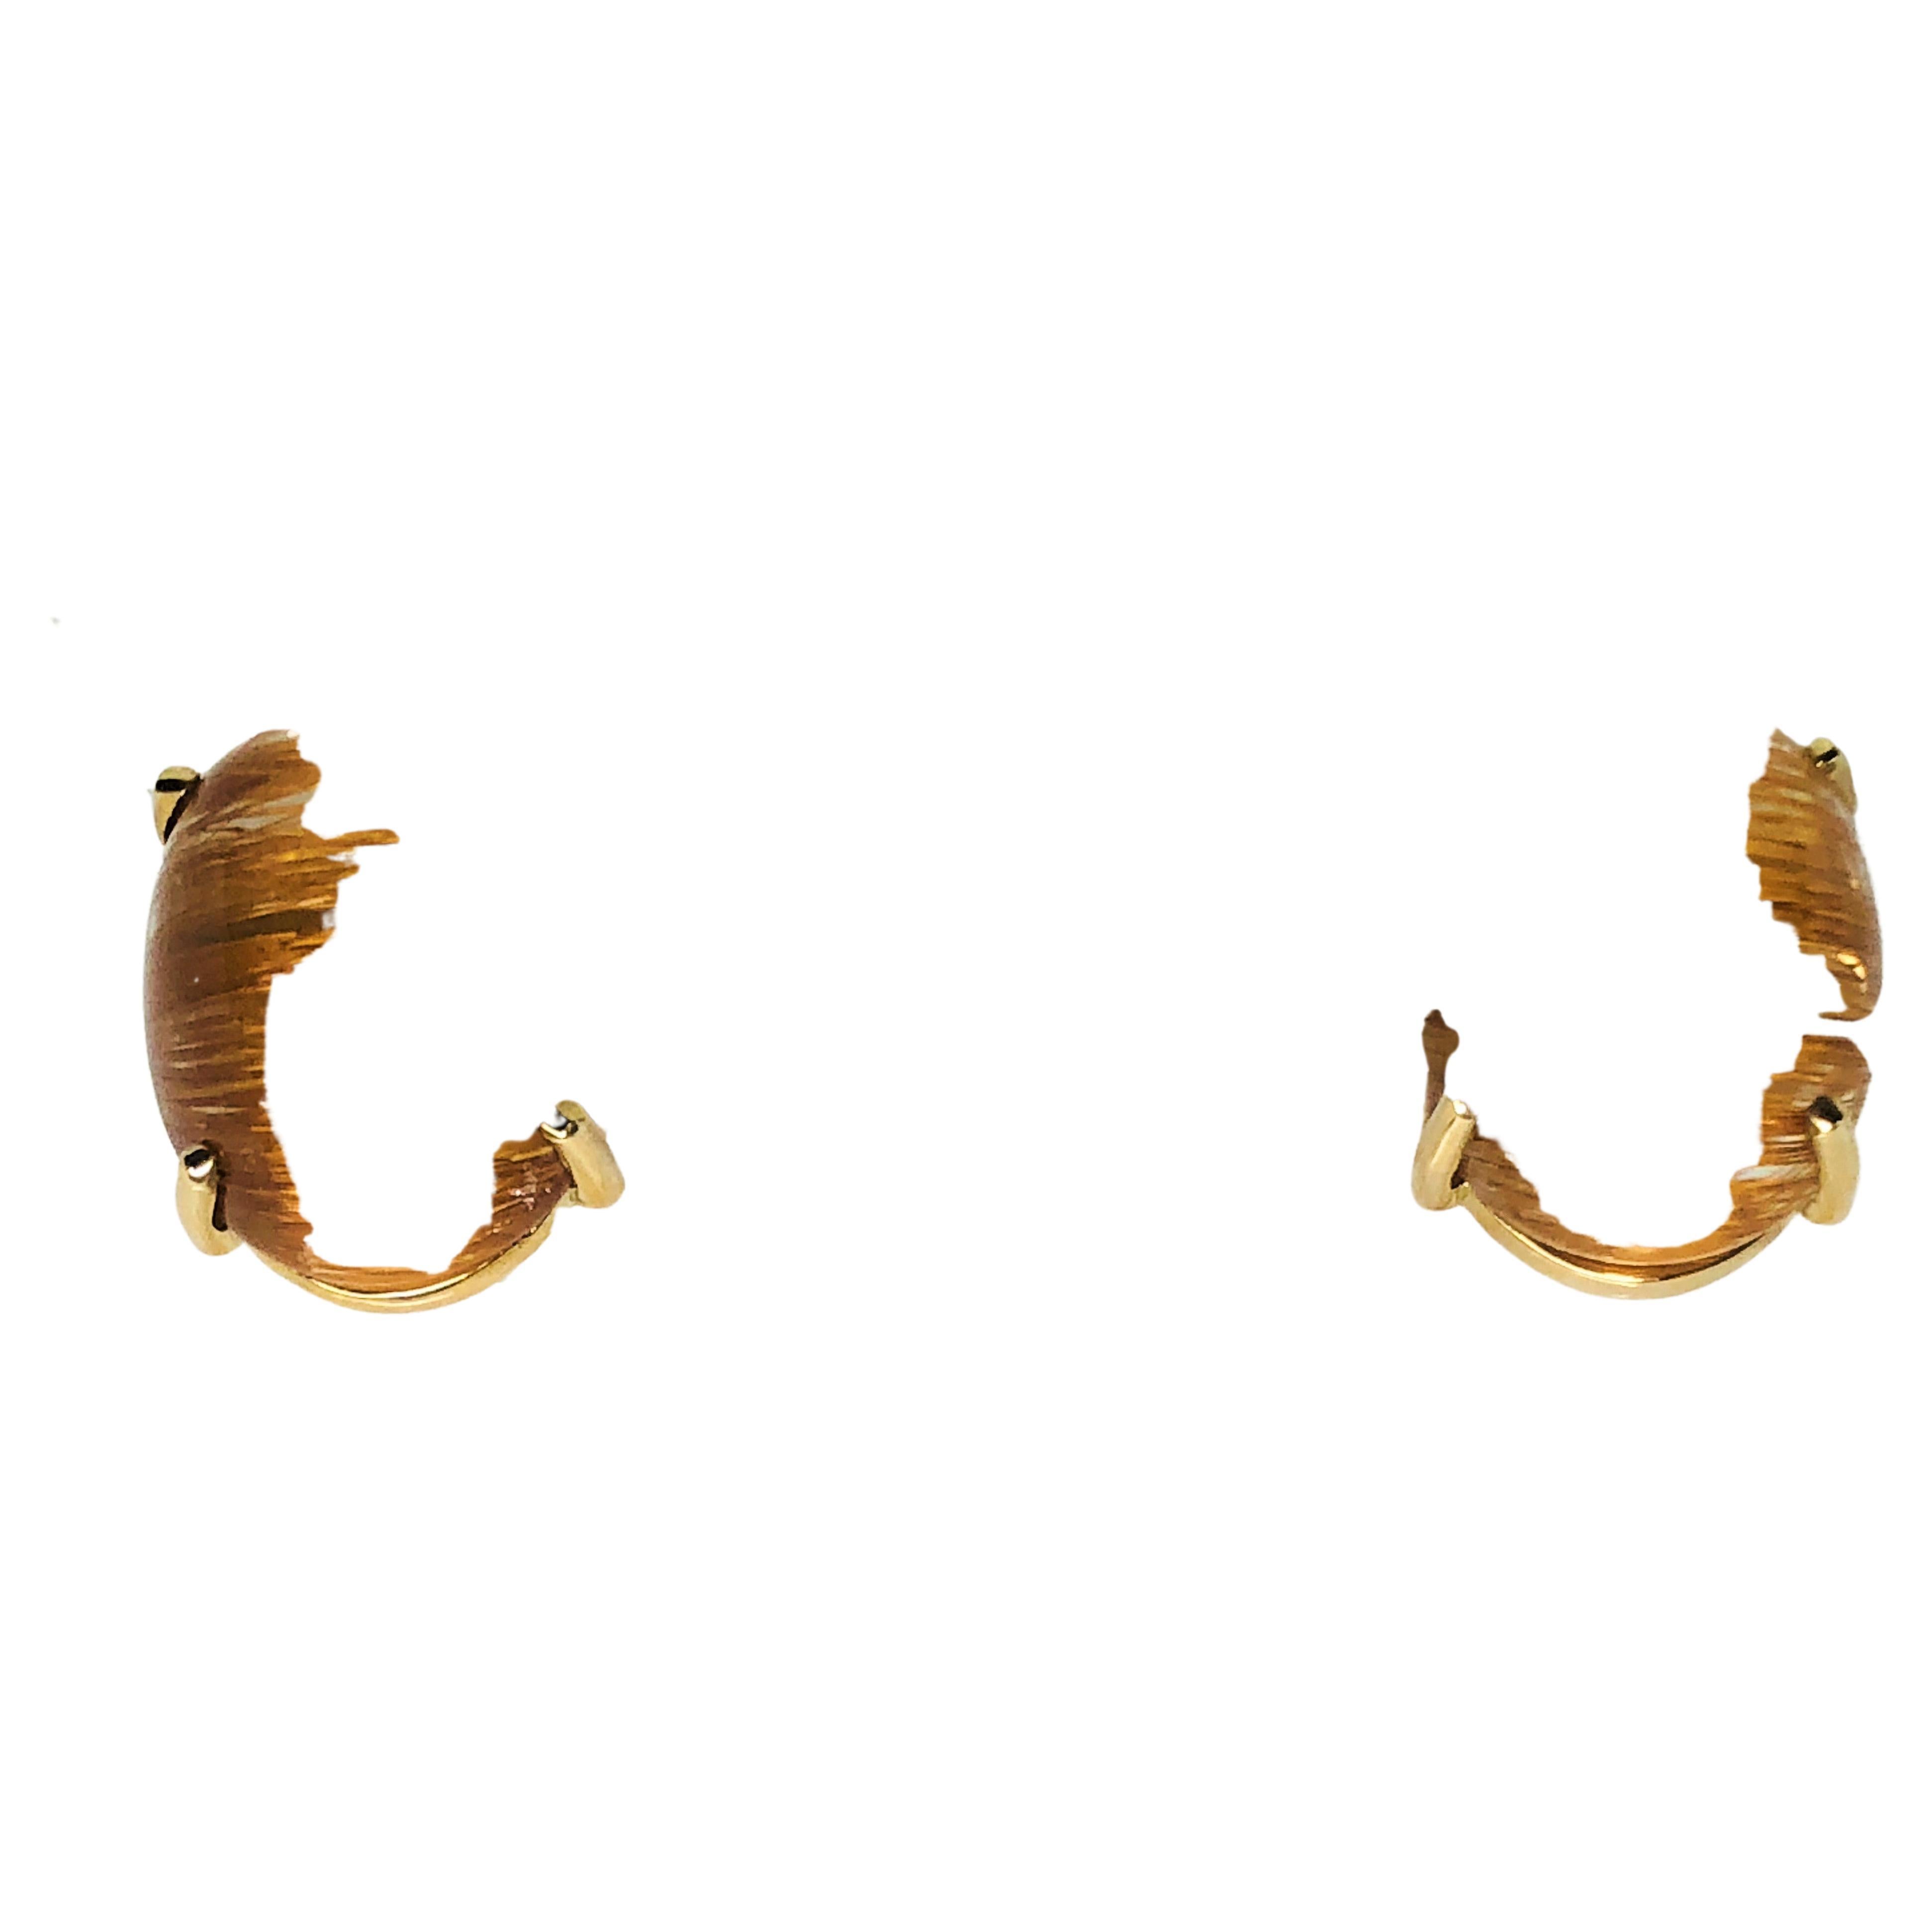 Ces boucles d'oreilles en quartz rutile sont faciles à porter au quotidien.
Belle couleur brune chaude avec de fortes rayures horizontales dorées.
De forme ovale, il est serti de 4 griffes.
or jaune 14 karat.
La tige est positionnée dans le tiers